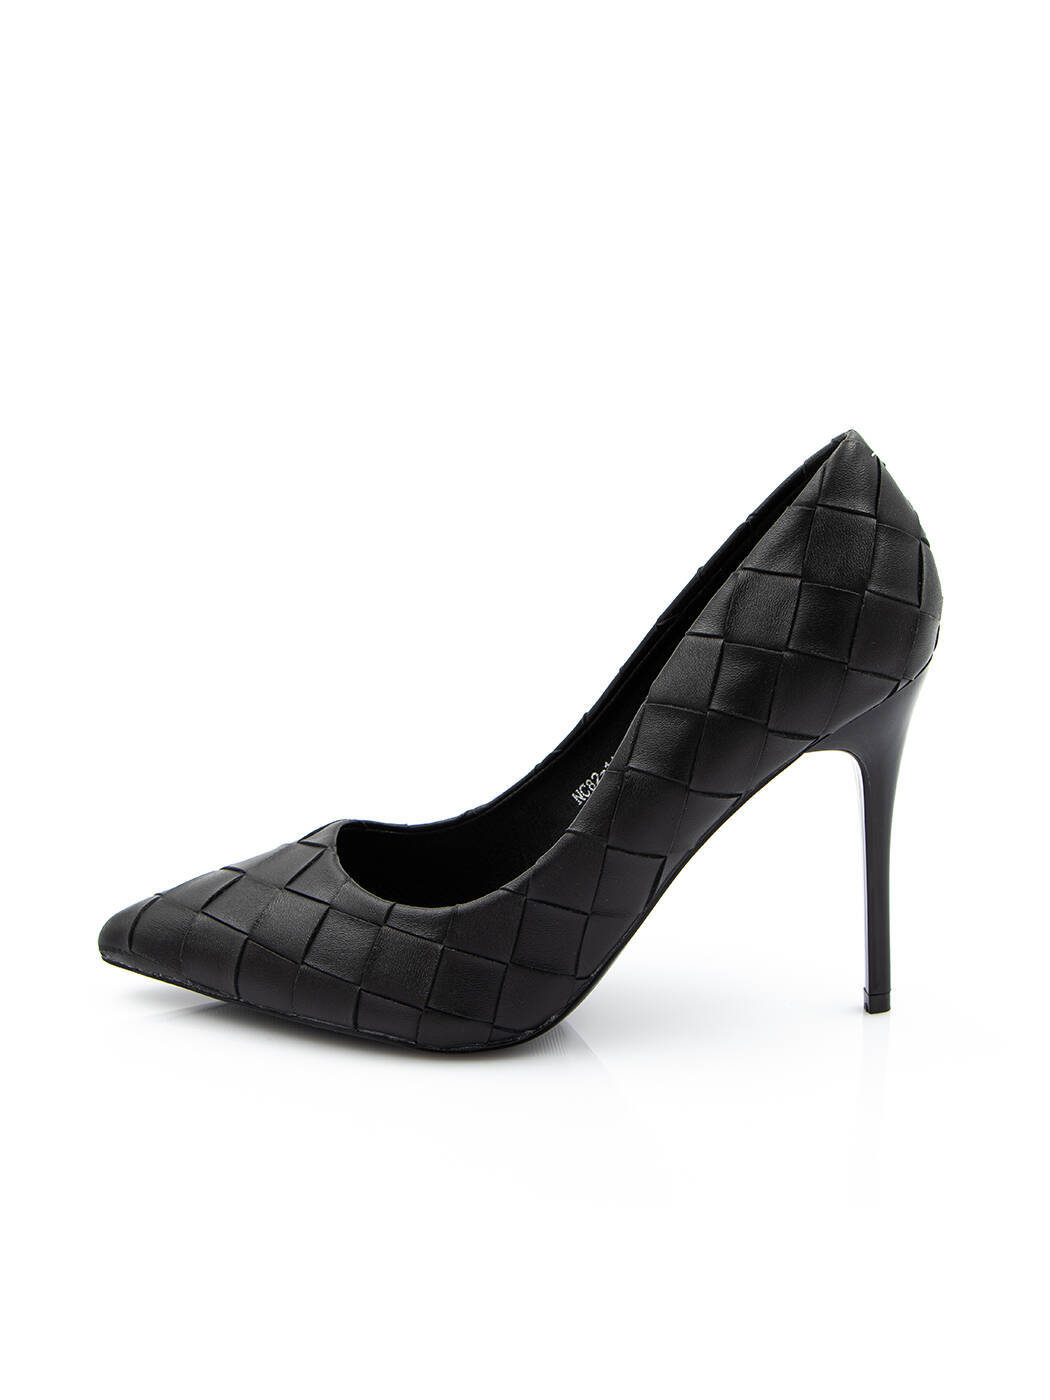 Туфли женские черные экокожа каблук шпилька демисезон от производителя AM